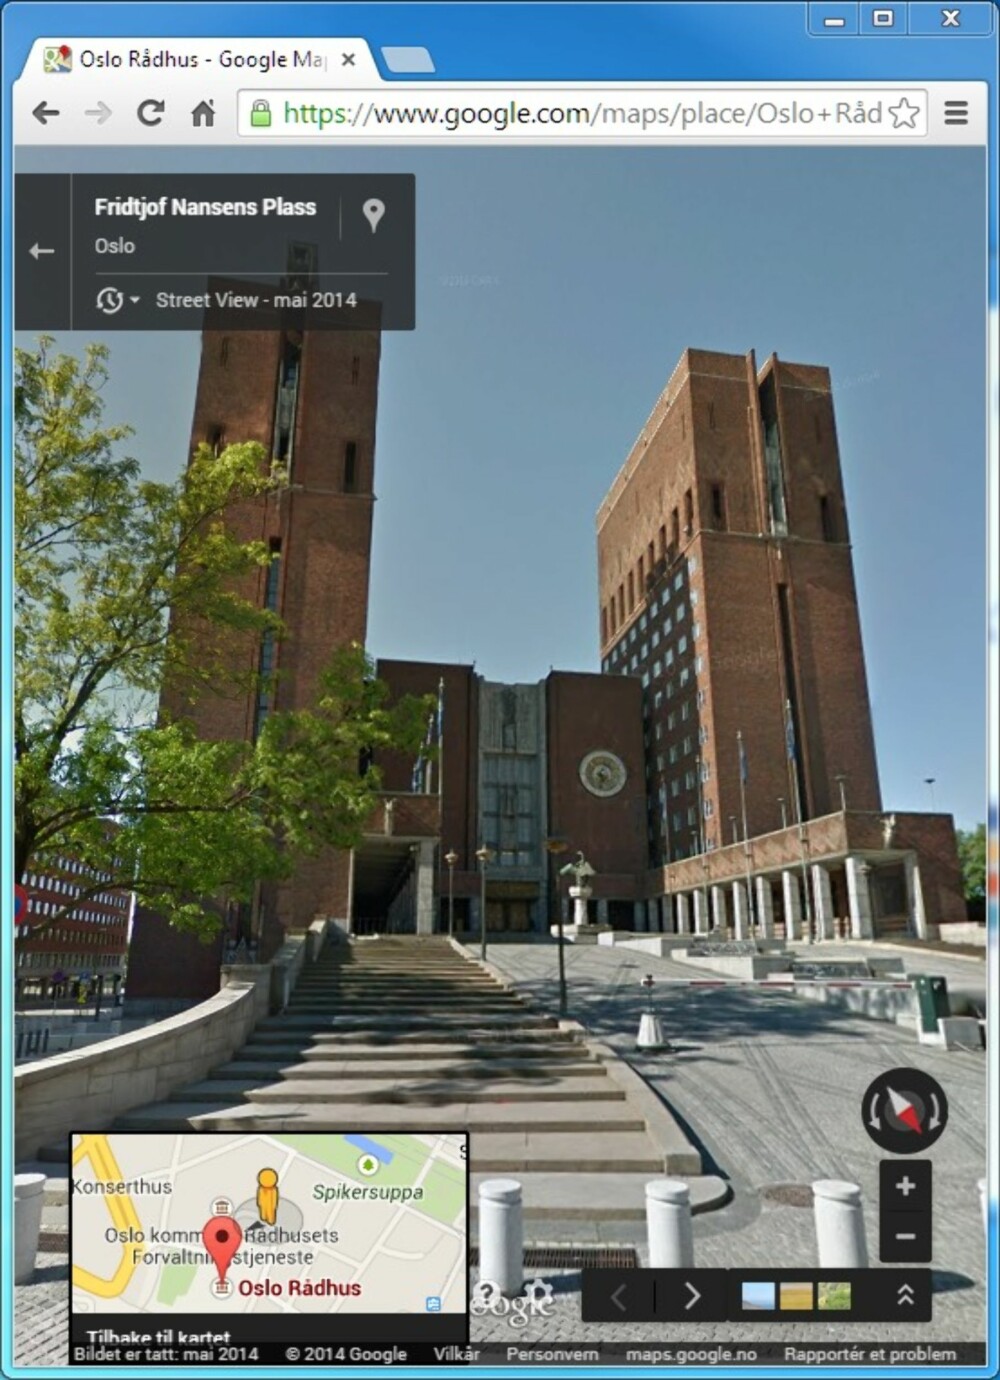 SE HVOR DU DRAR: Med Google Street View kan du se hvordan stedet du skal besøke ser ut.